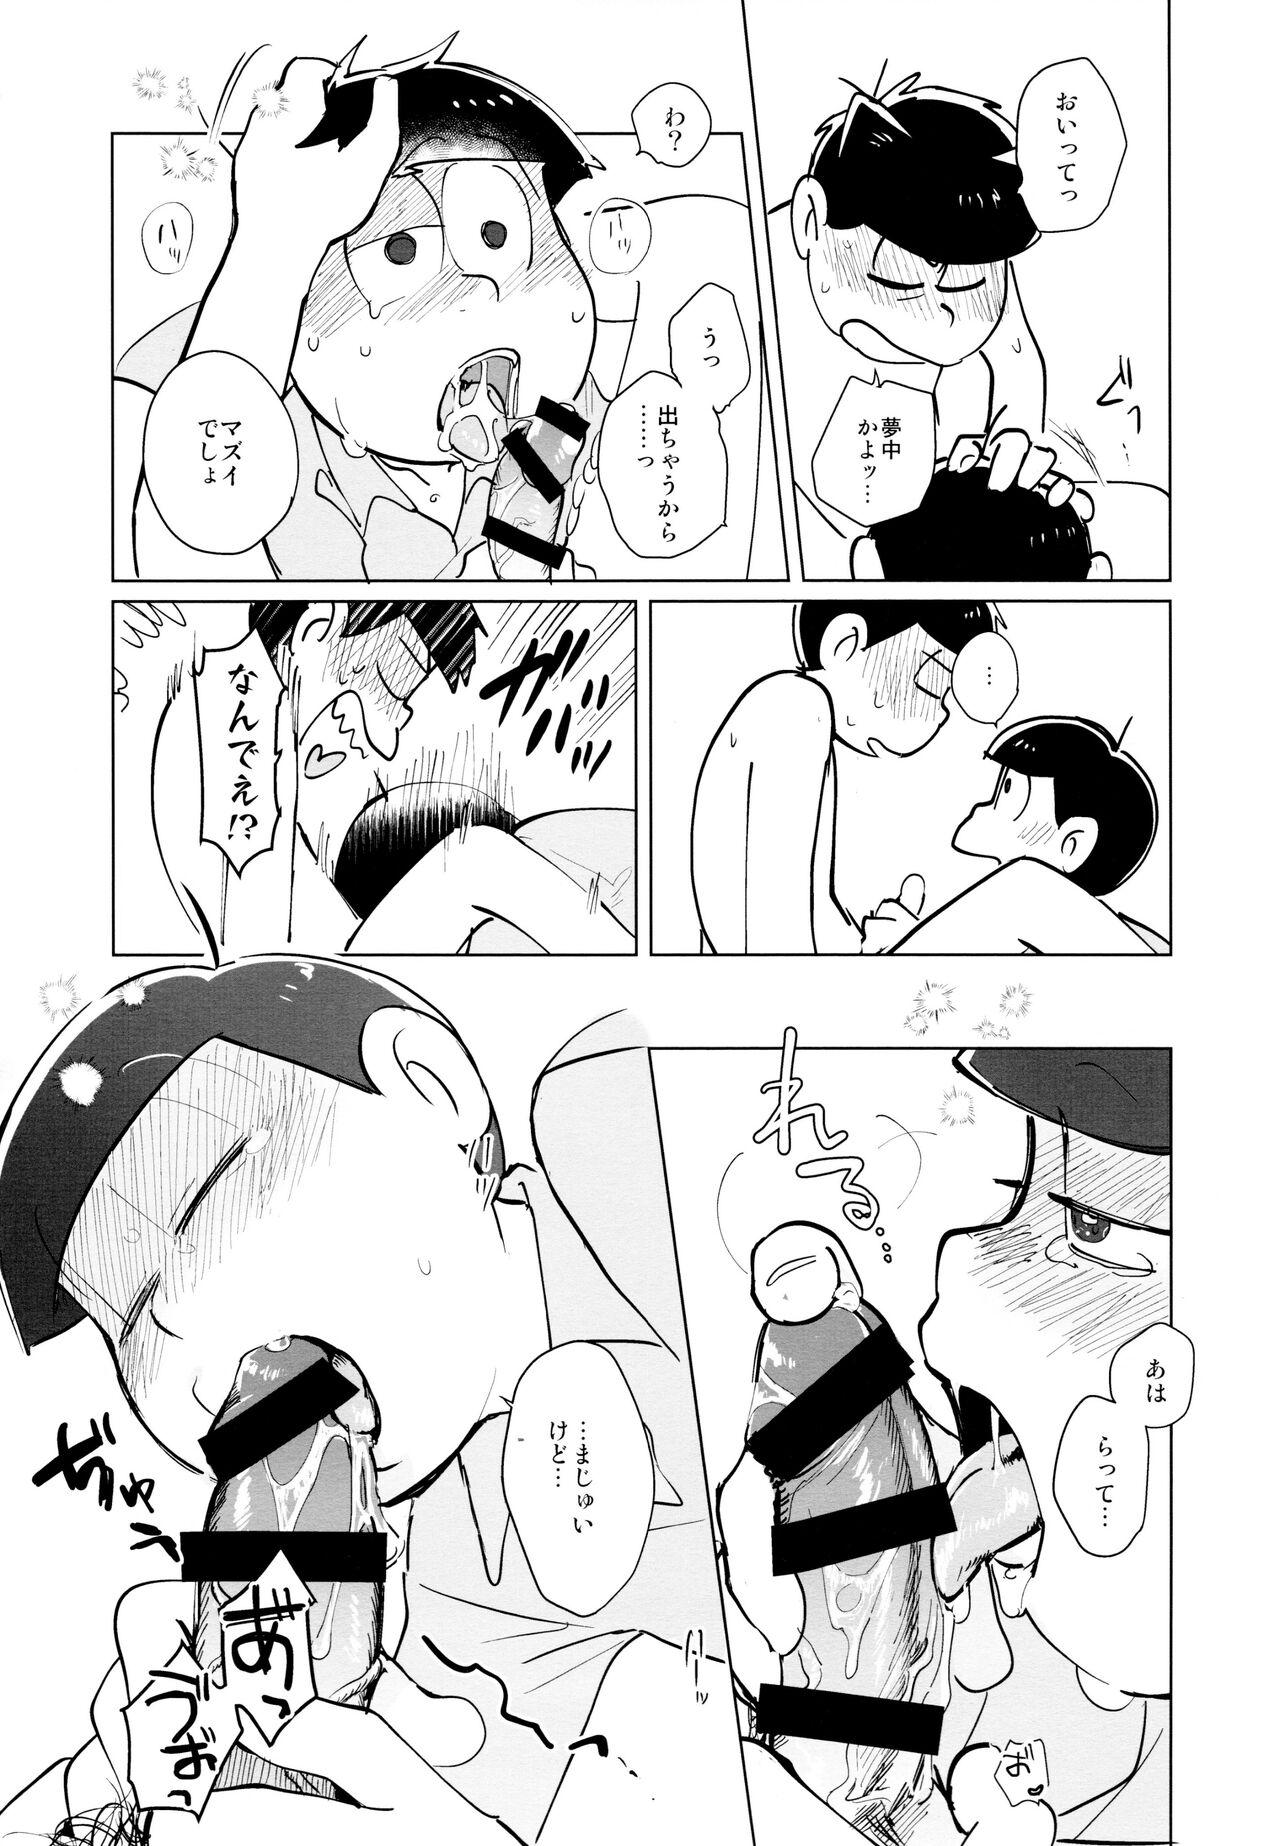 High jacobson error2 - Osomatsu san Tight Ass - Page 6